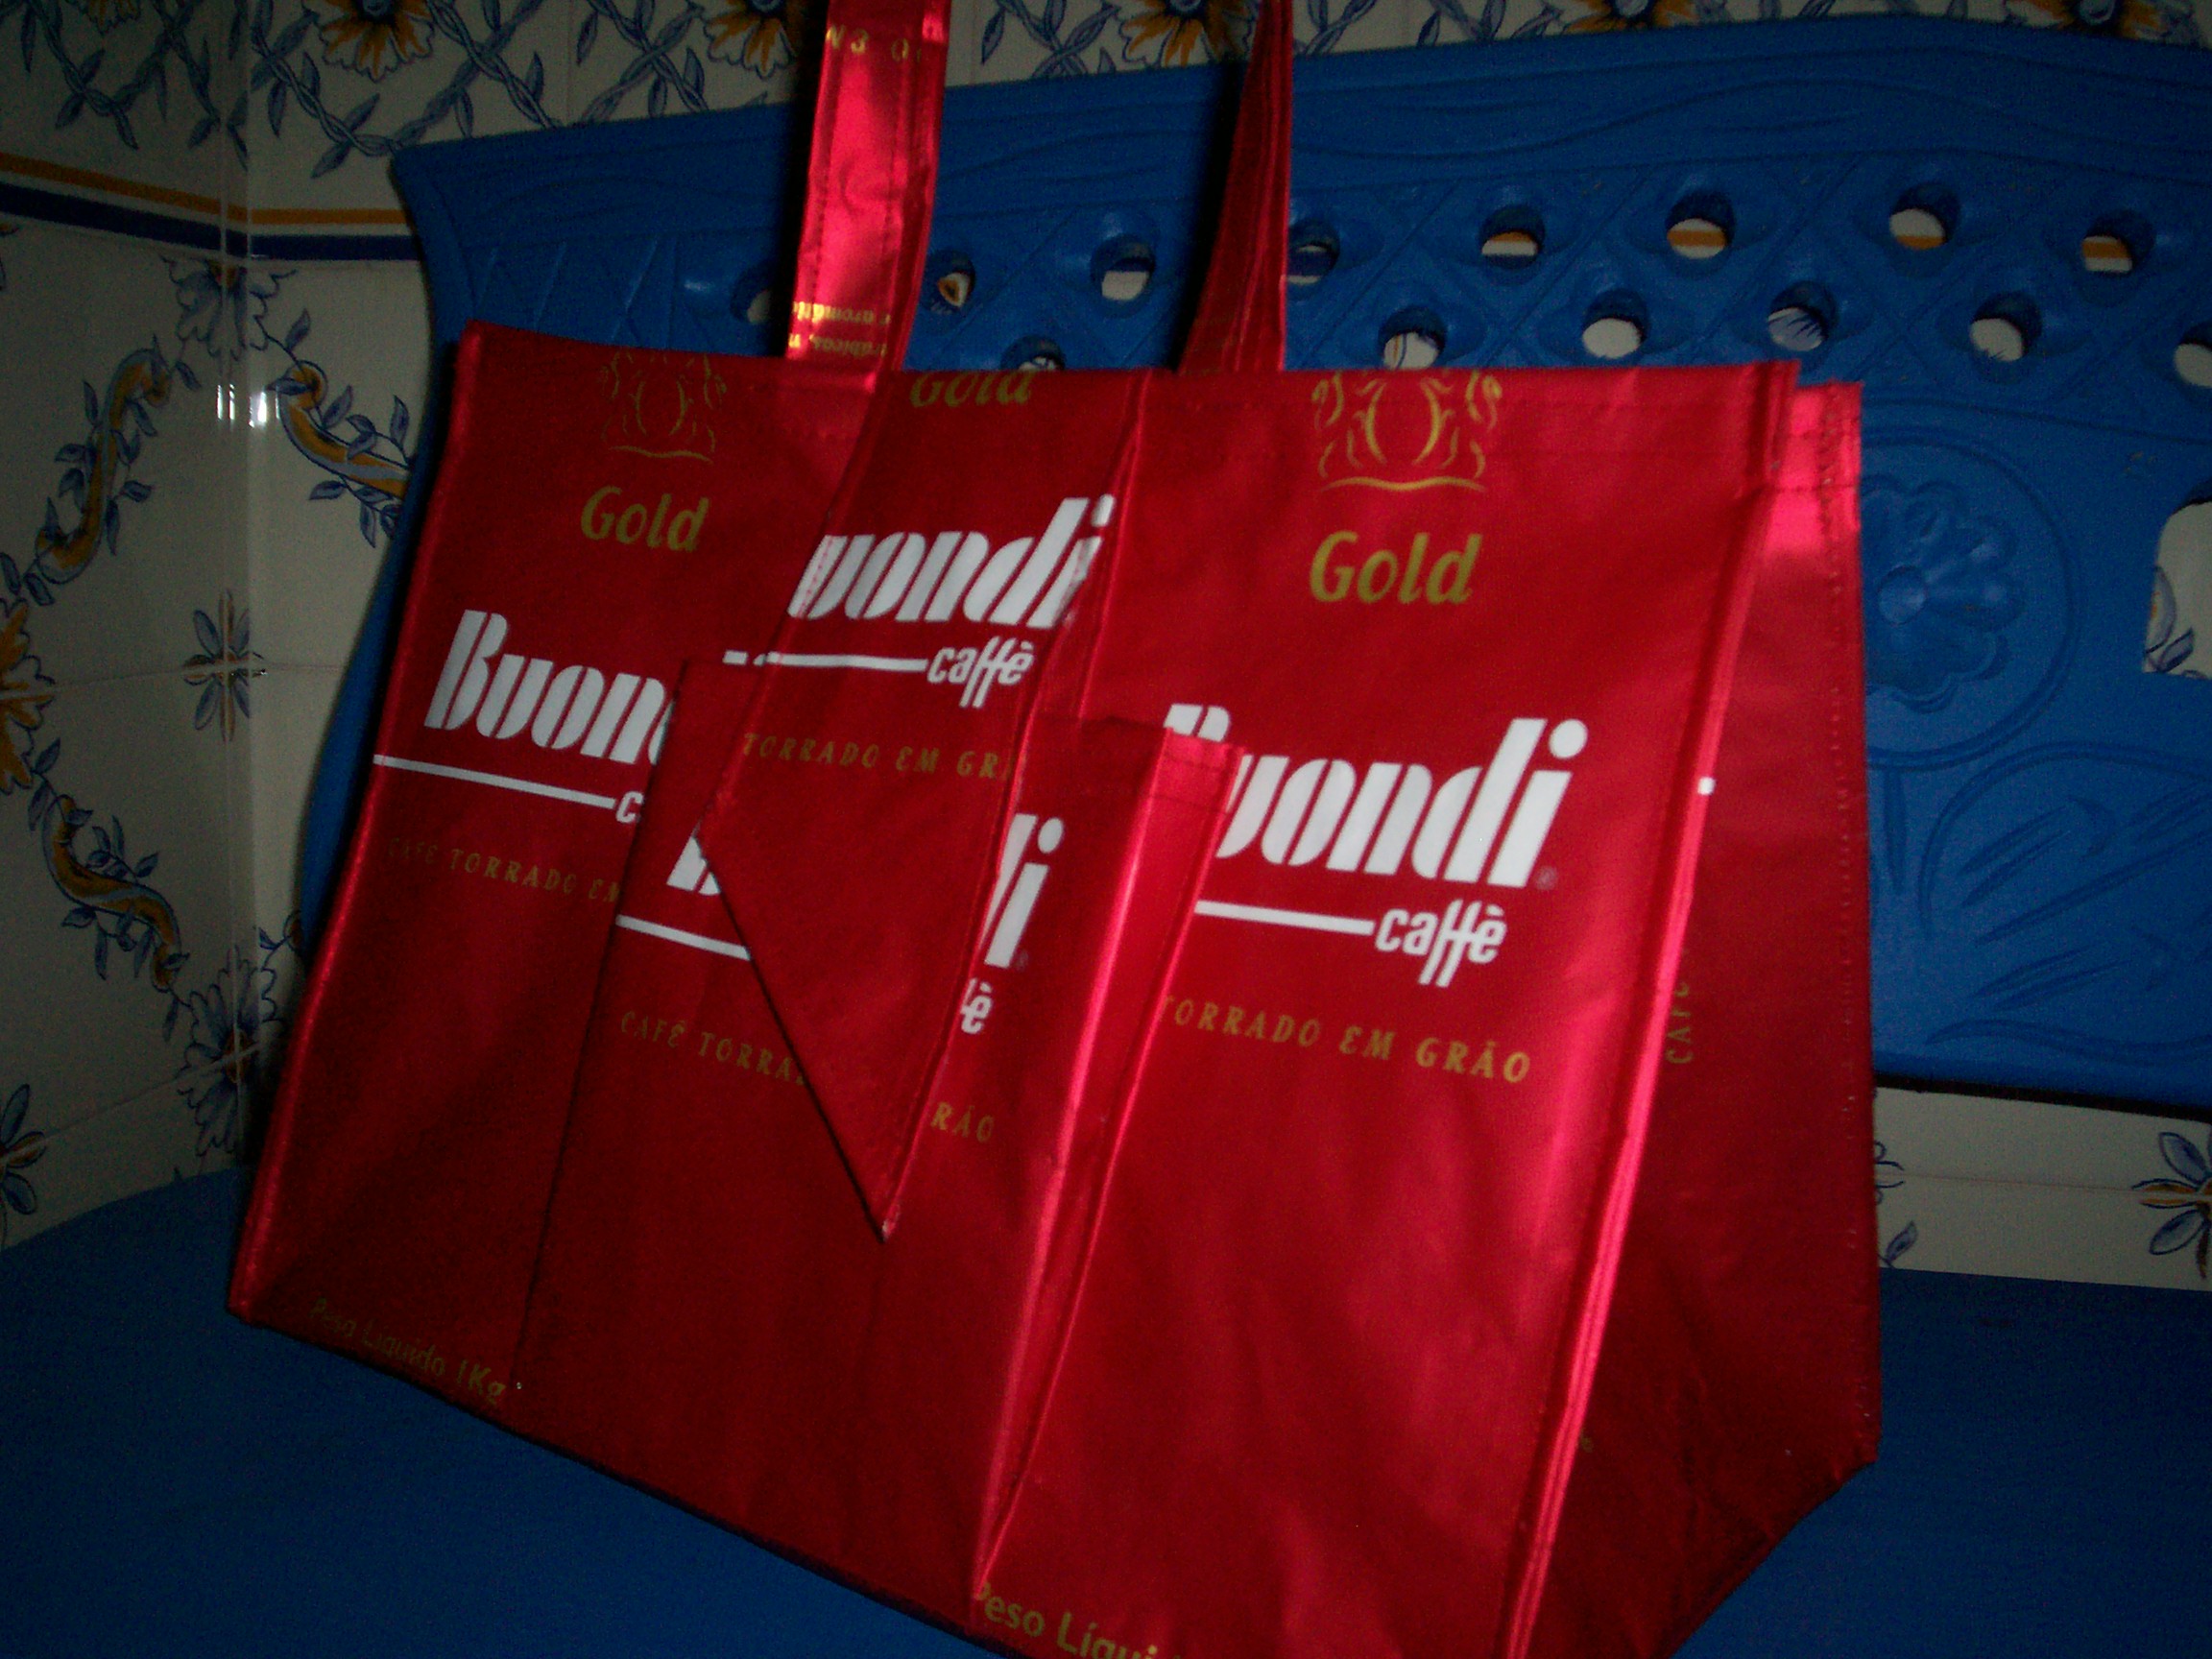 saco buondi, lindo este saco, vendido na feira de artesanato de Belém, disponivel em vermelho, azul e verde